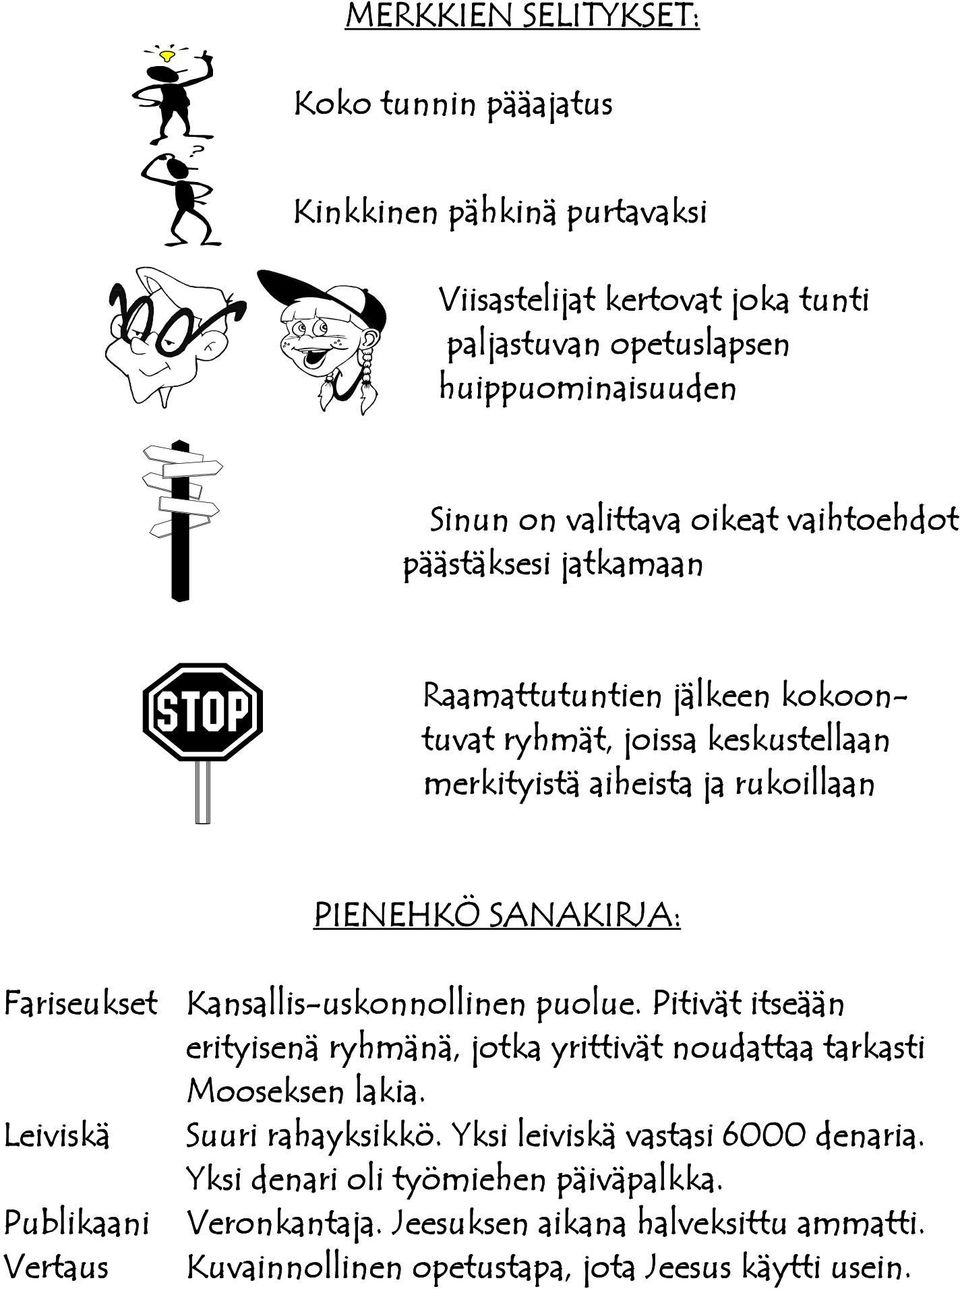 Fariseukset Leiviskä Publikaani Vertaus Kansallis-uskonnollinen puolue. Pitivät itseään erityisenä ryhmänä, jotka yrittivät noudattaa tarkasti Mooseksen lakia.